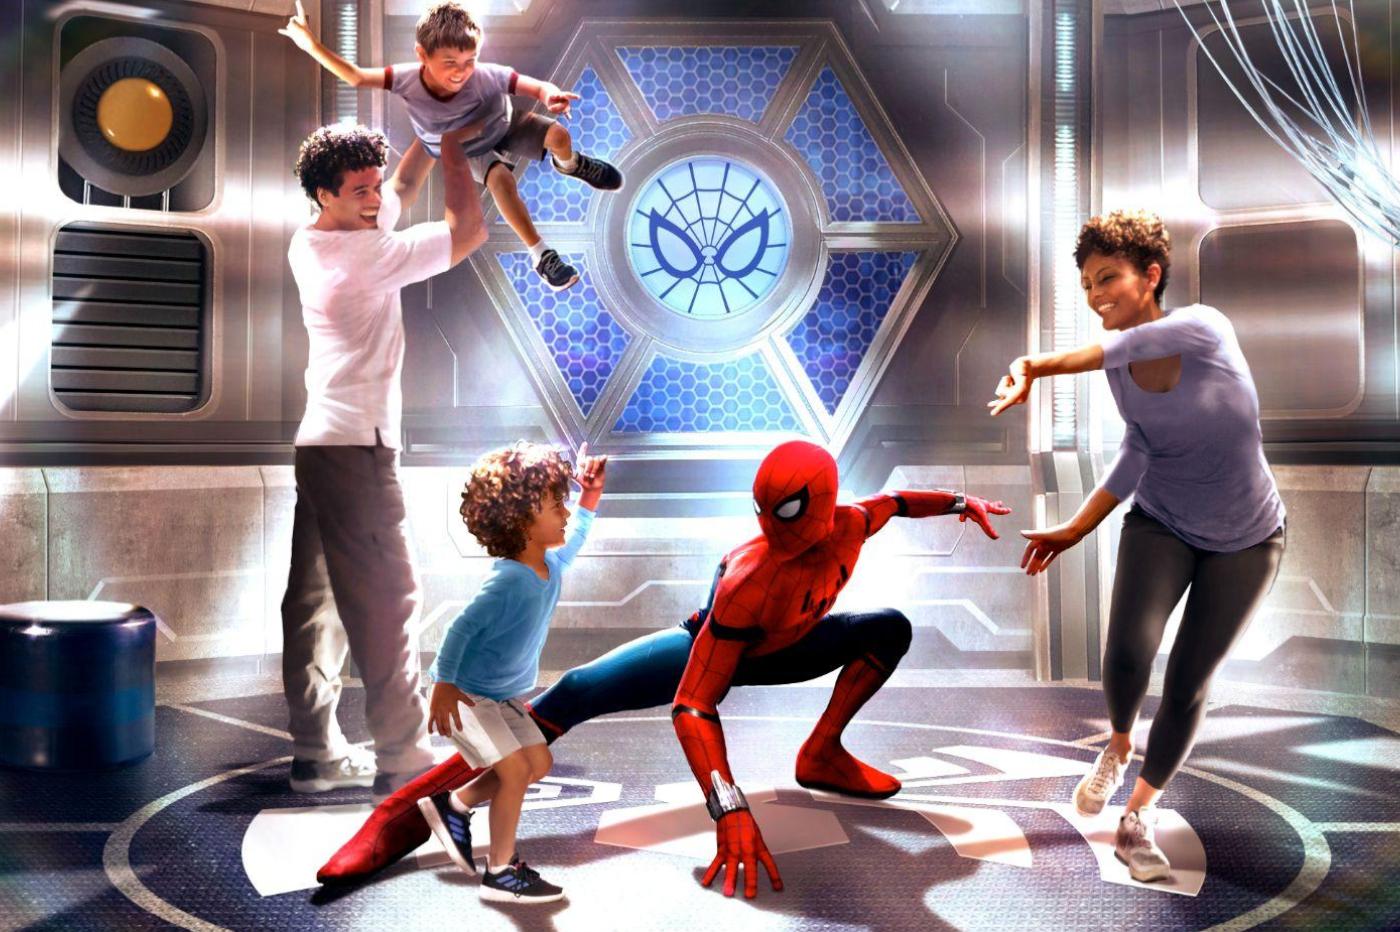 Image promotionnelle du point de rencontre avec Spider-Man